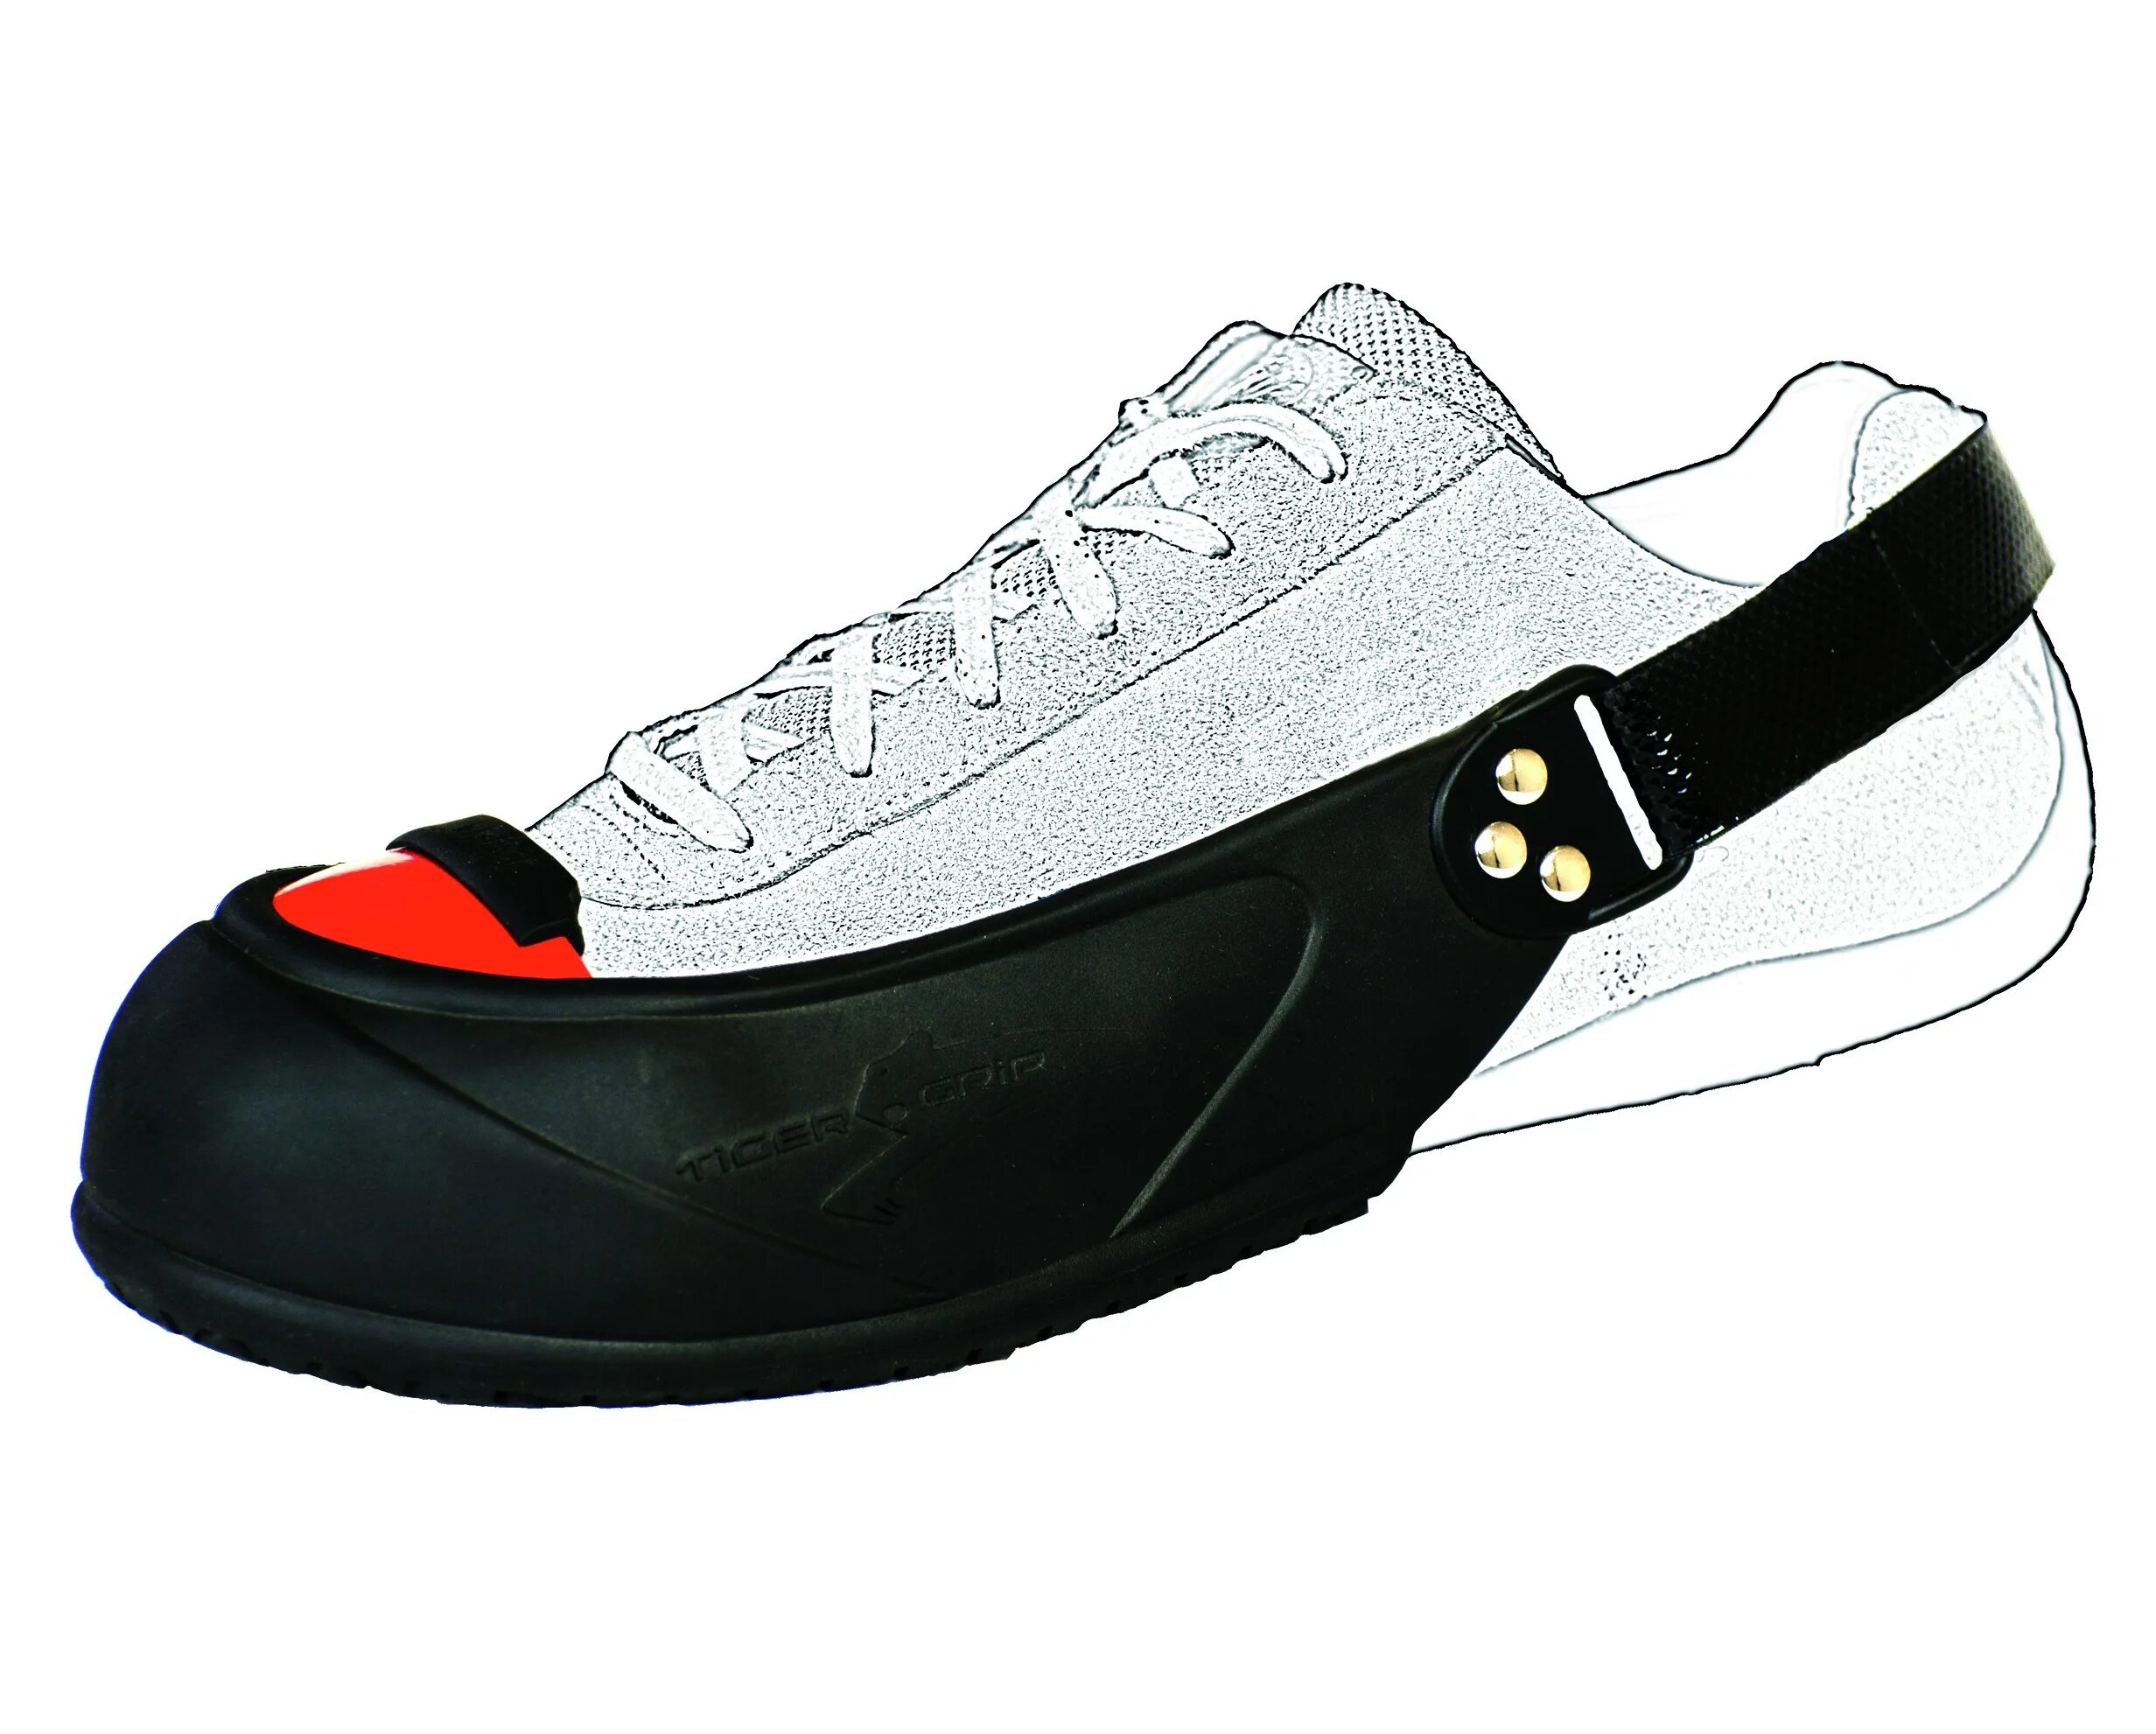 Защита обуви купить. Защитные подноски Tiger Grip. Подносок защитный съемный универсальный (размер 35-45). Гостевые защитные подноски Tiger Grip Visitor. Защитные подноски на обувь.